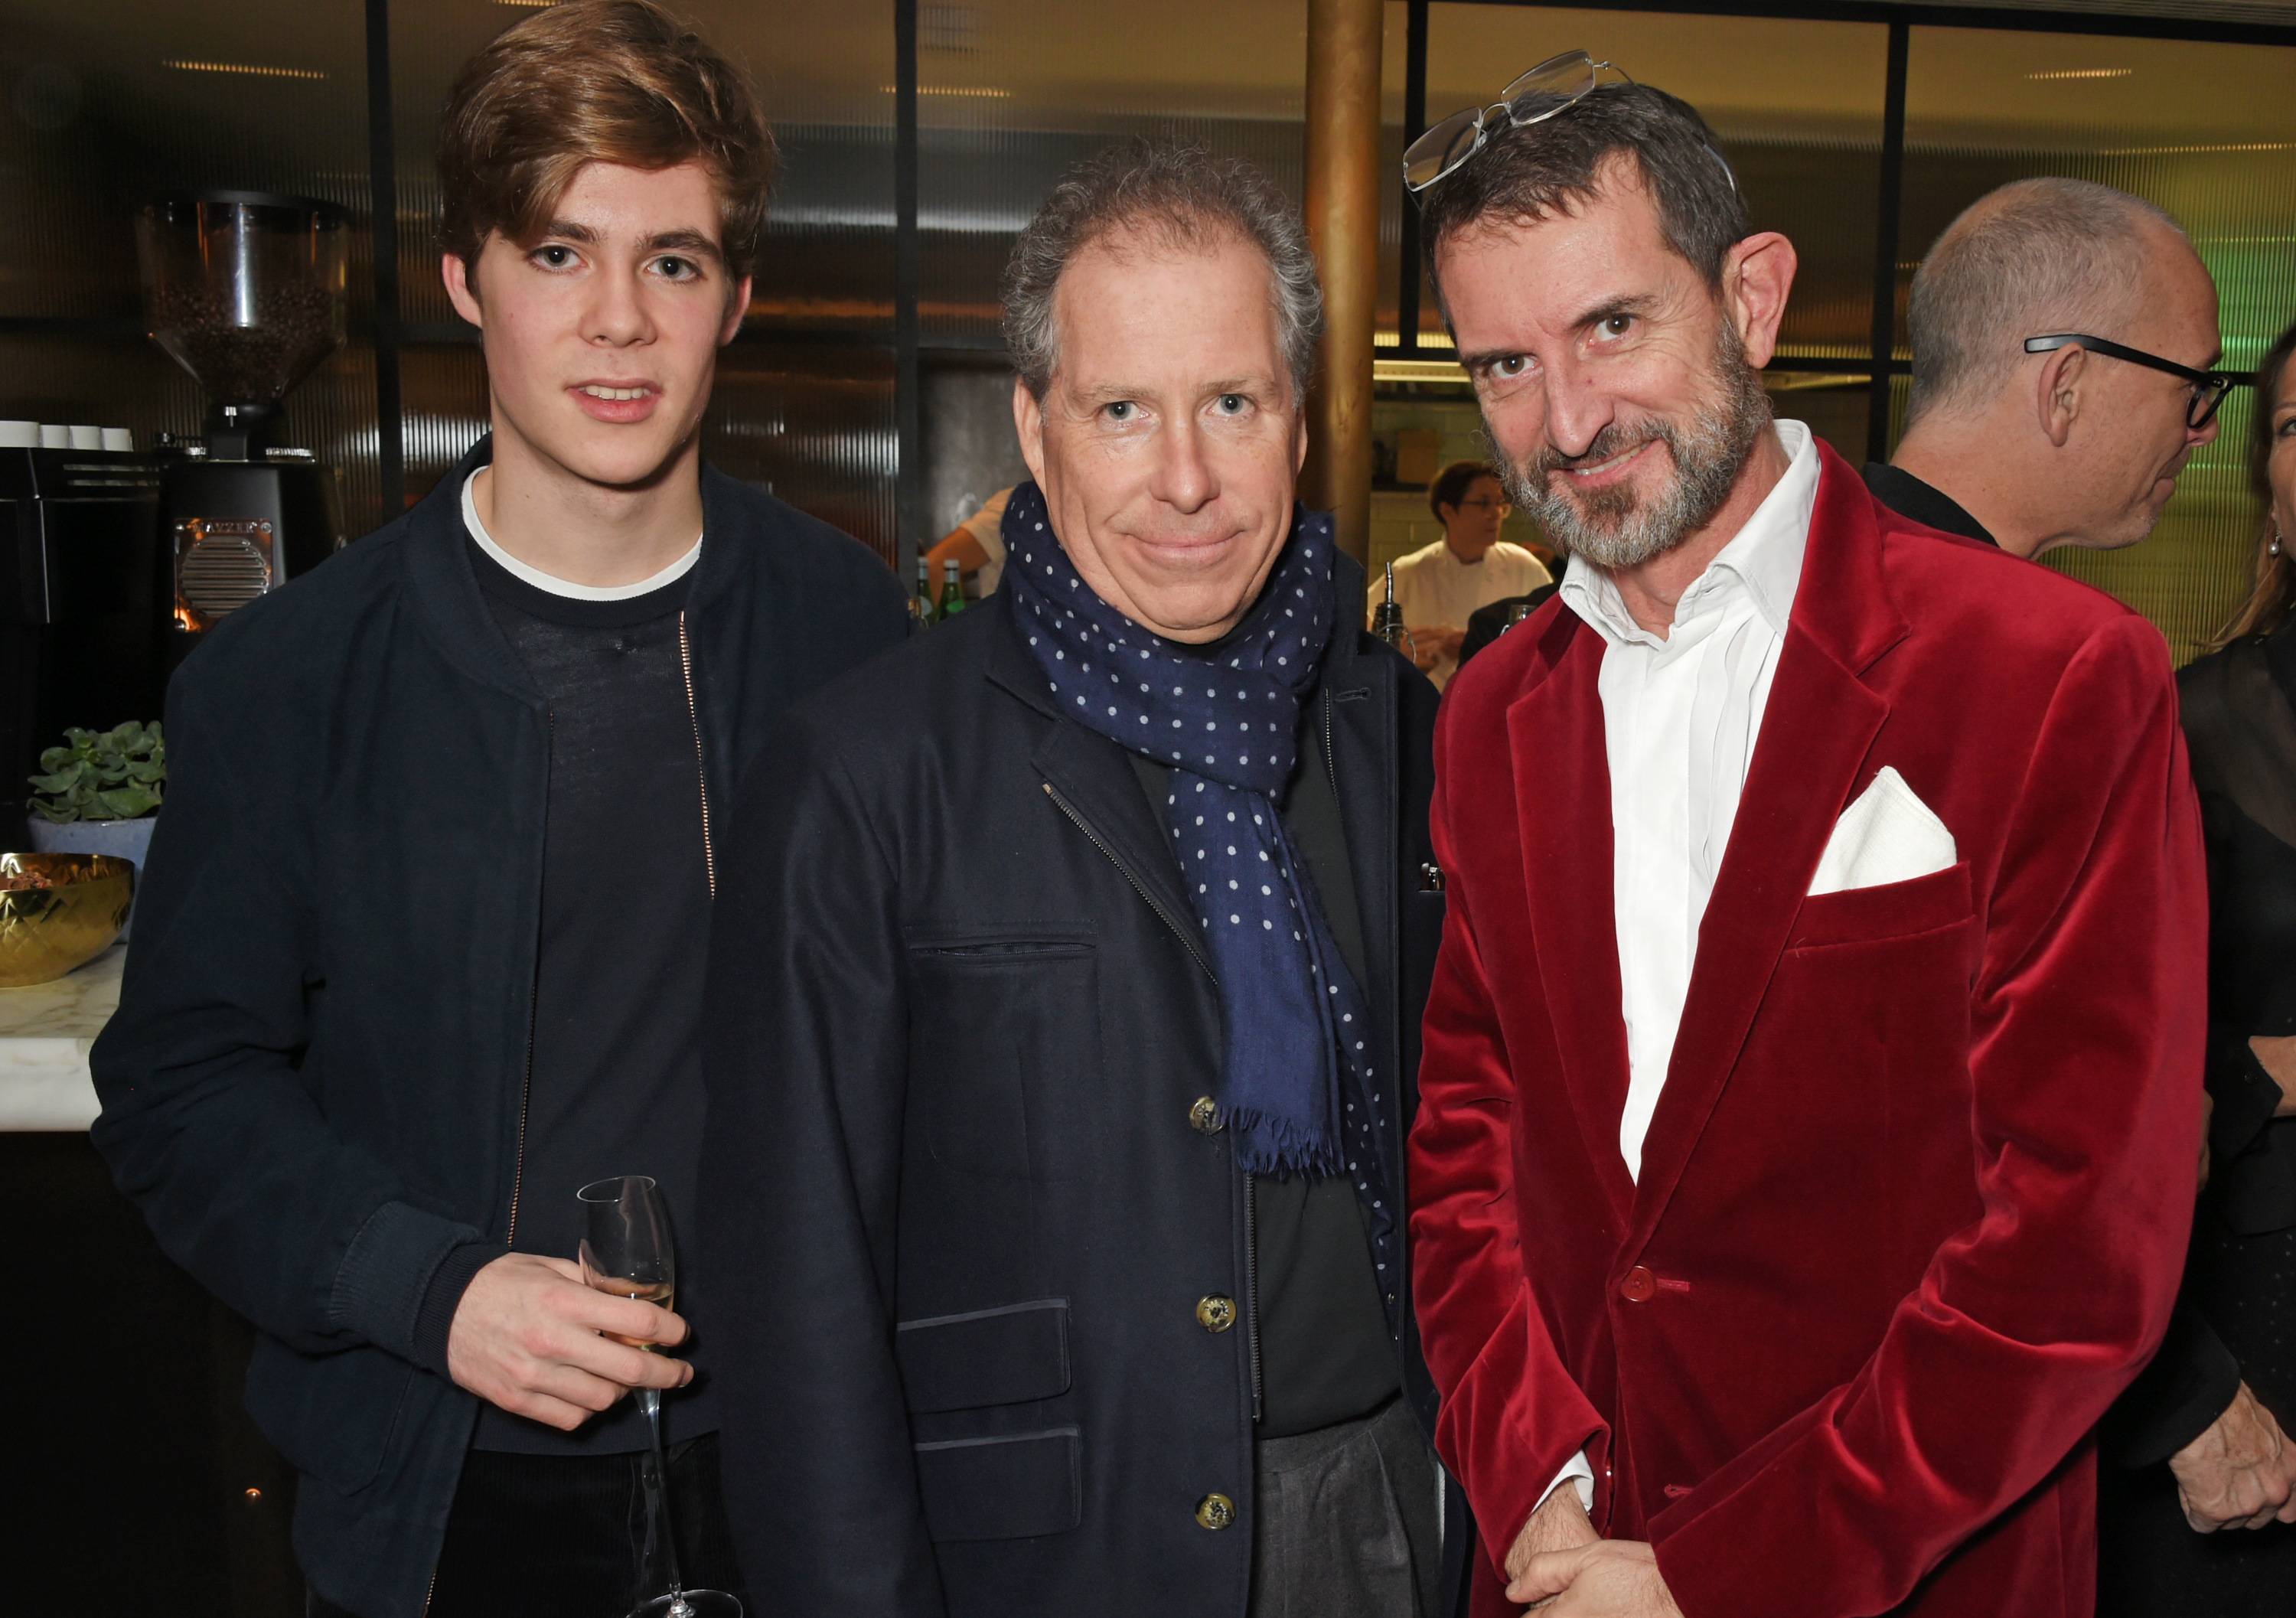 Charles Armstrong-Jones, David Armstrong-Jones y Manfredi della Gherardesca asisten a la fiesta del 18 cumpleaños de Alexander Dundas el 16 de diciembre de 2017 en Londres, Inglaterra. | Fuente: Getty Images